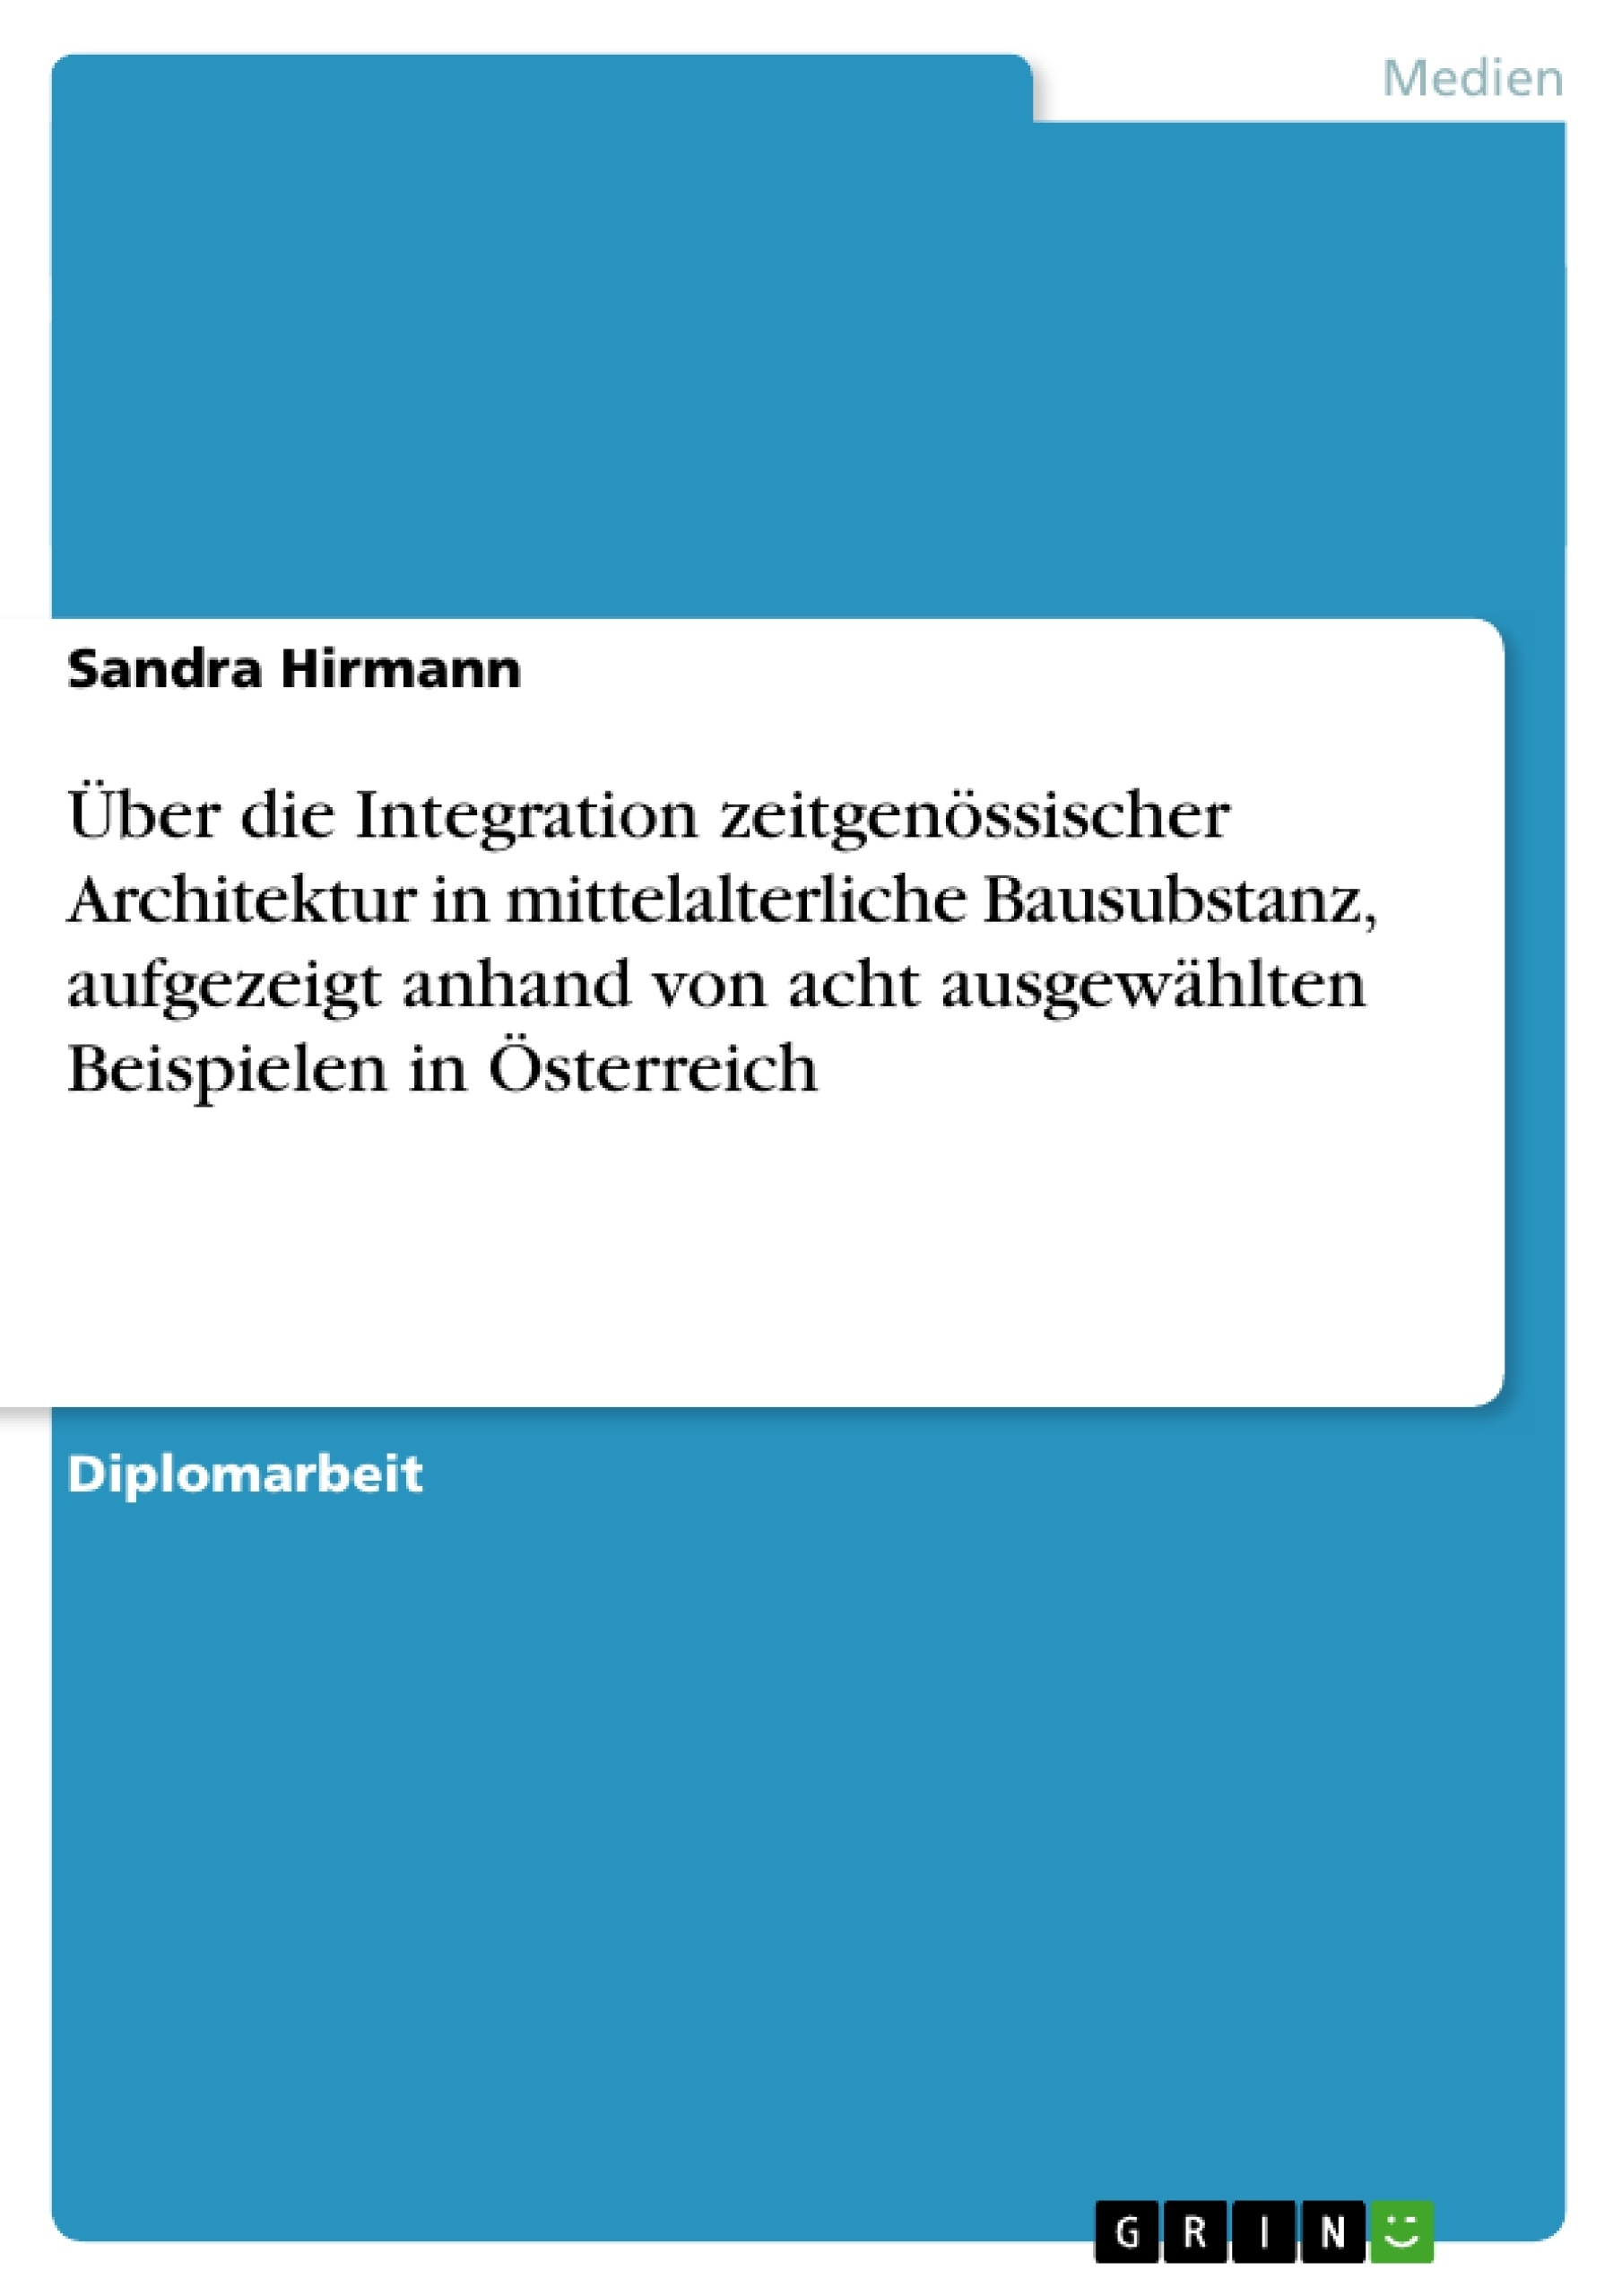 Title: Über die Integration zeitgenössischer Architektur in mittelalterliche Bausubstanz, aufgezeigt anhand von acht ausgewählten Beispielen in Österreich 